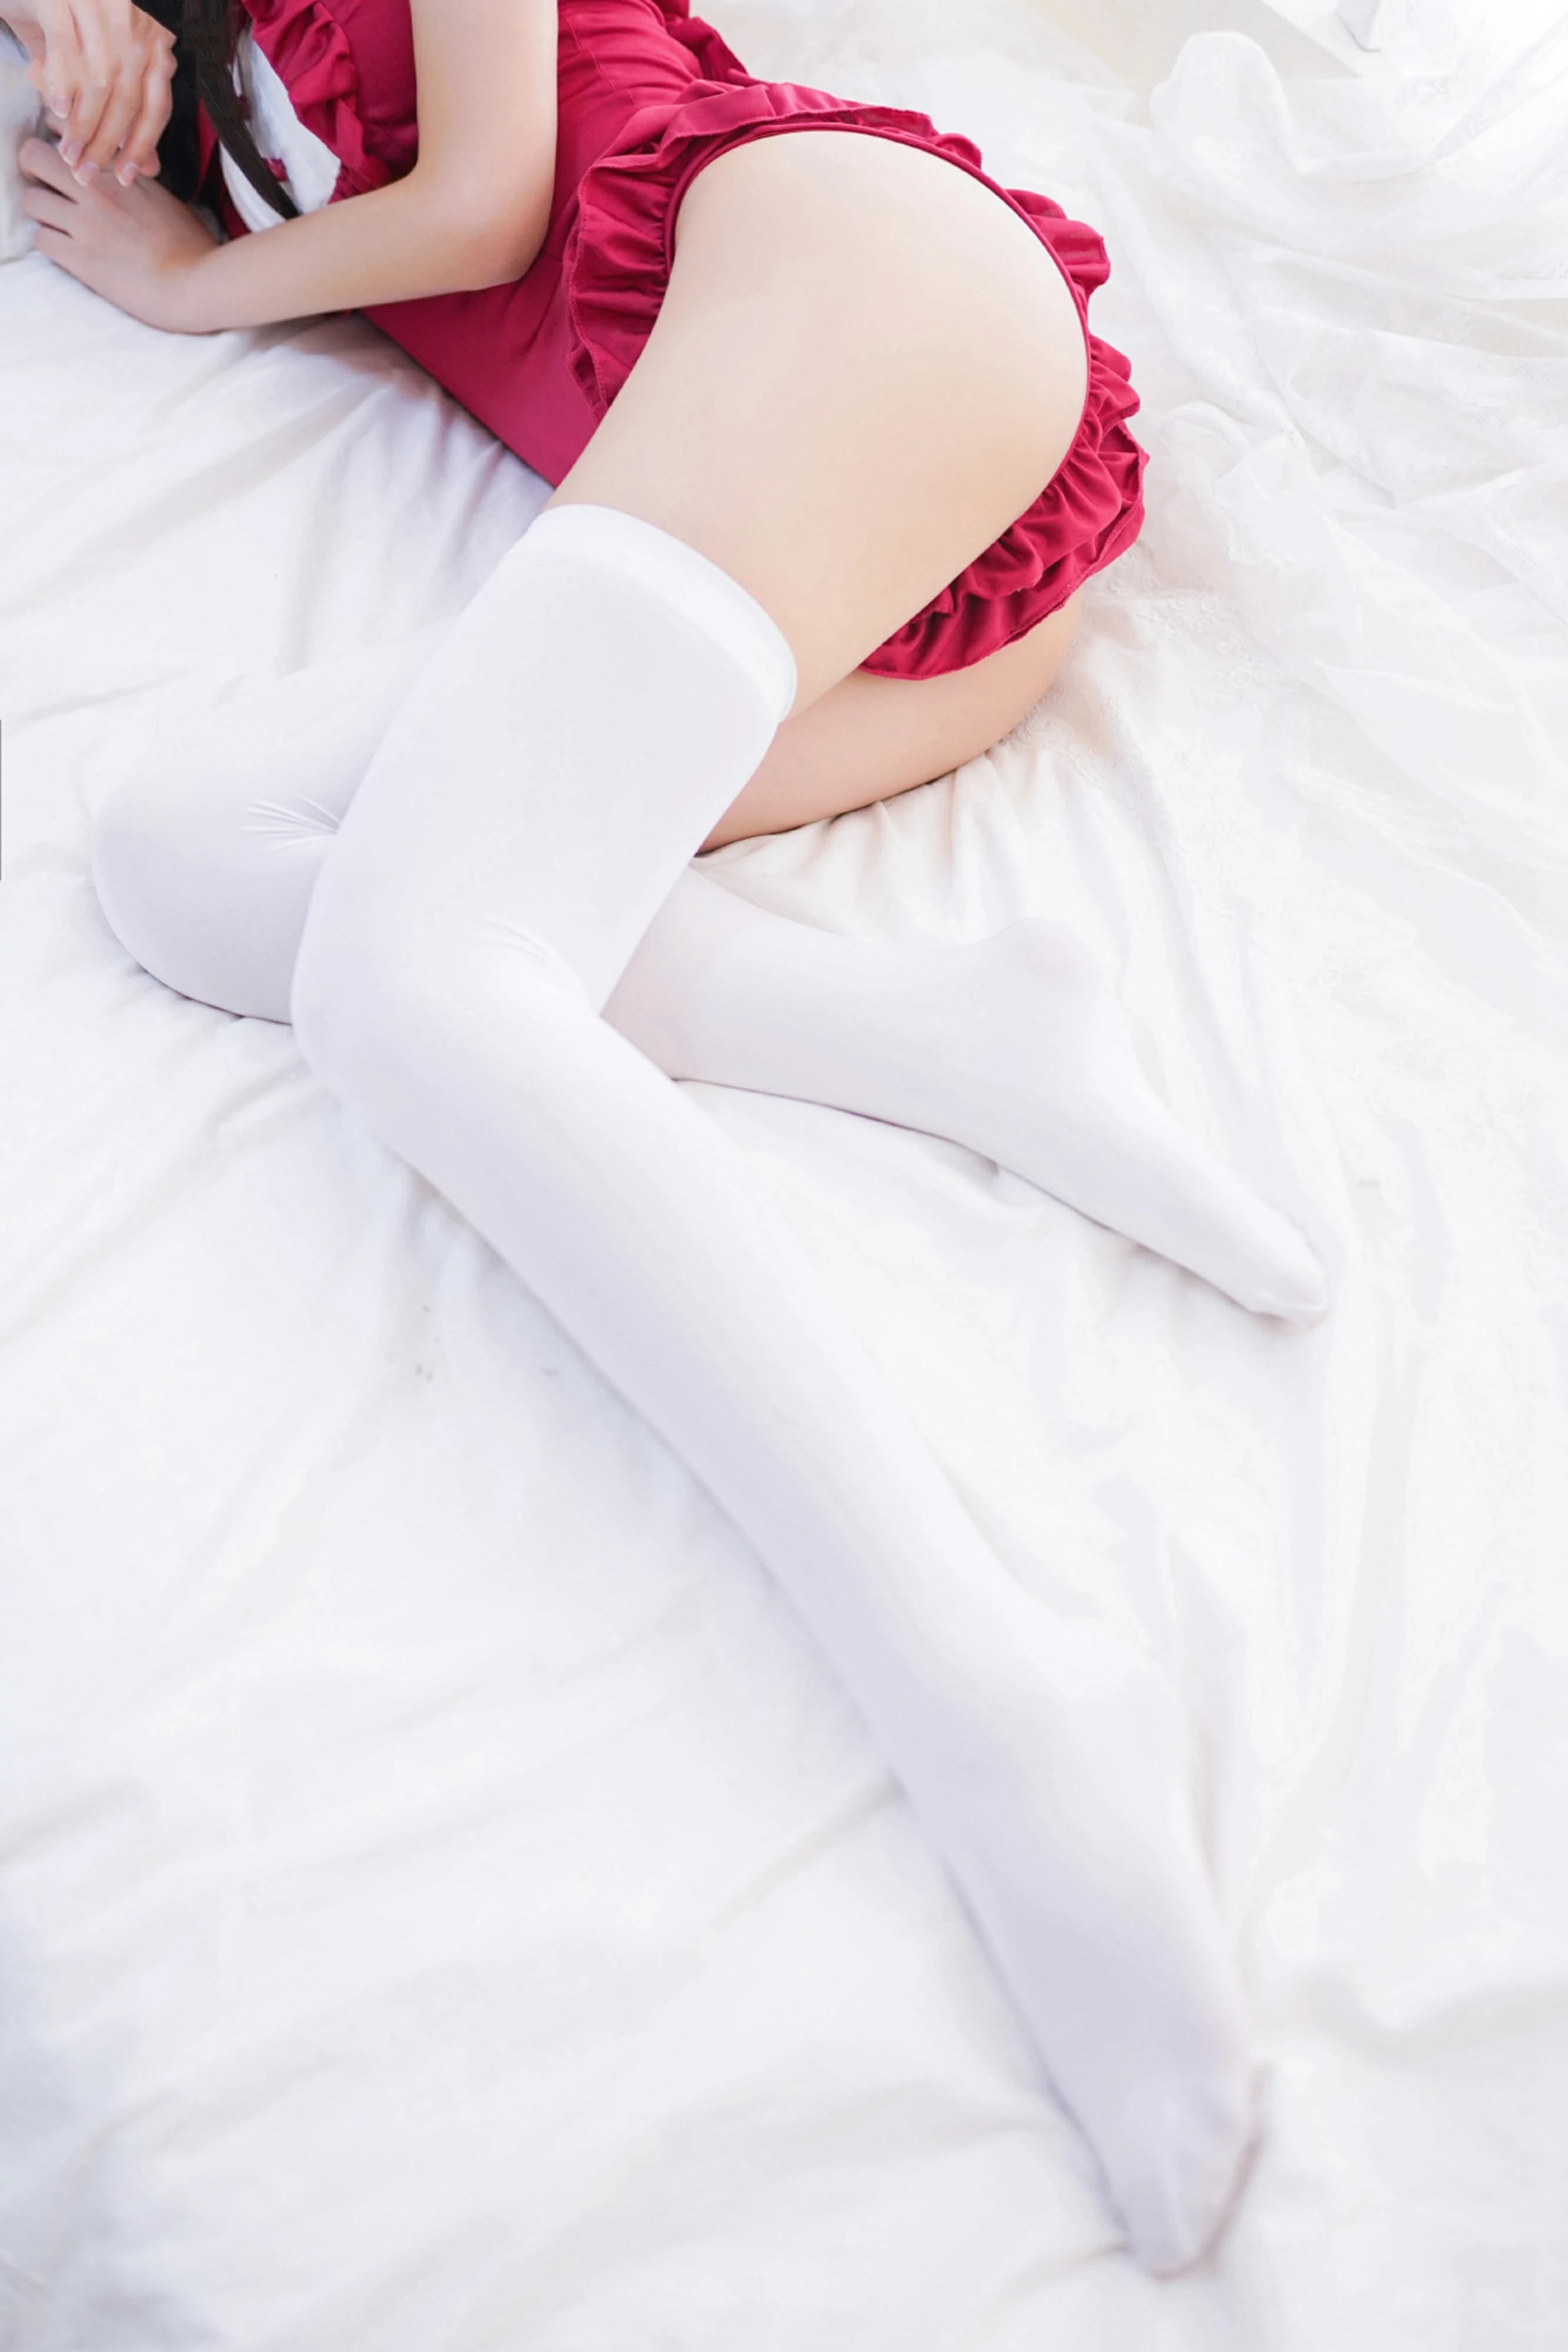 [风之领域]NO.124 清纯可爱小萝莉 红色情趣制服连衣裙加白色丝袜美腿性感私房写真集,